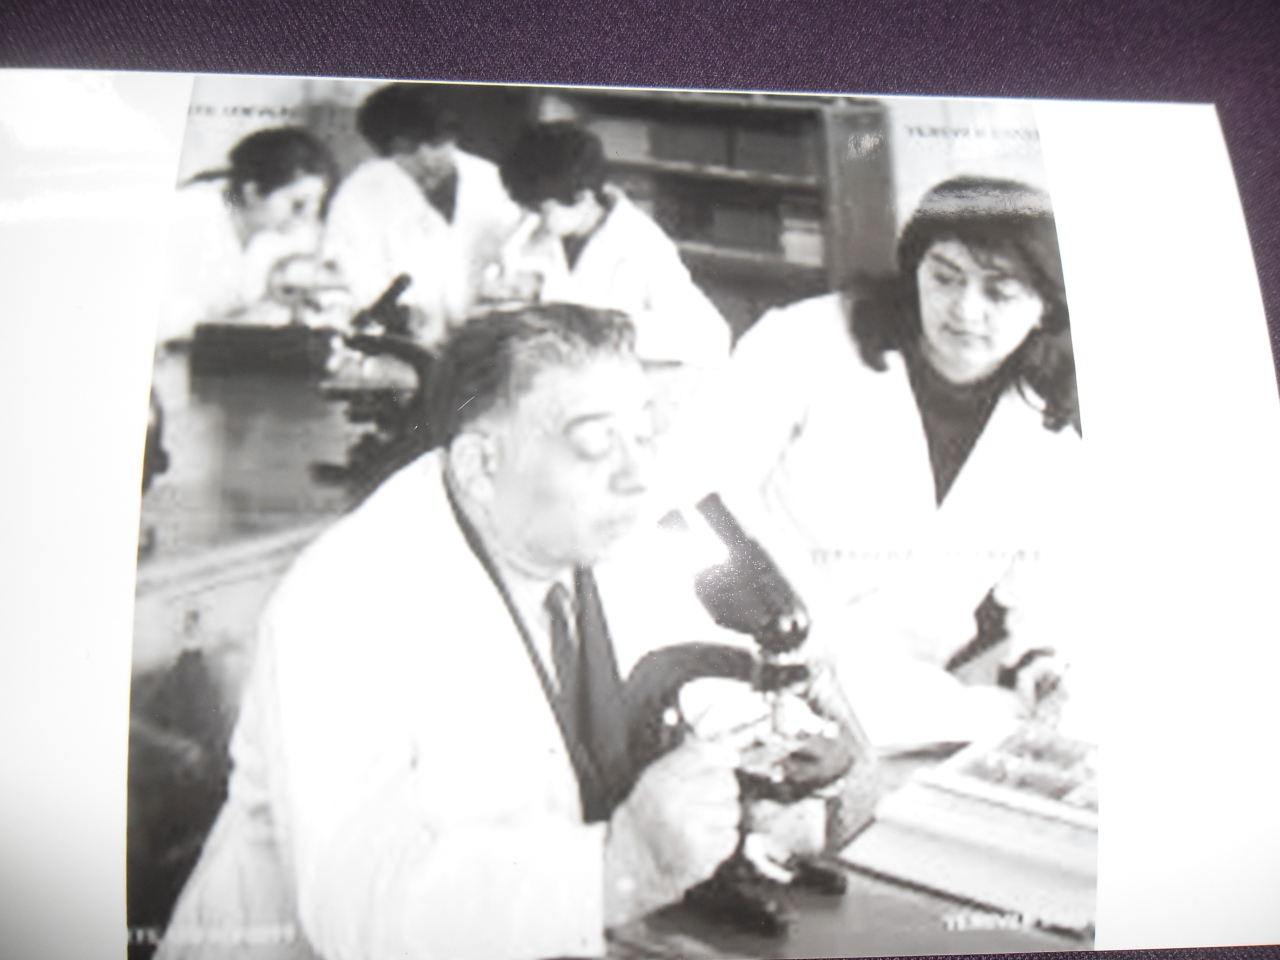 Հրանտ Գևորգի Բատիկյան  (1909-1983 թթ.) -Կենսաբան-գենետիկ, ՀԽՍՀ գիտության վաստակավոր գործիչ, կենսաբանական գիտությունների դոկտոր, պրոֆեսոր